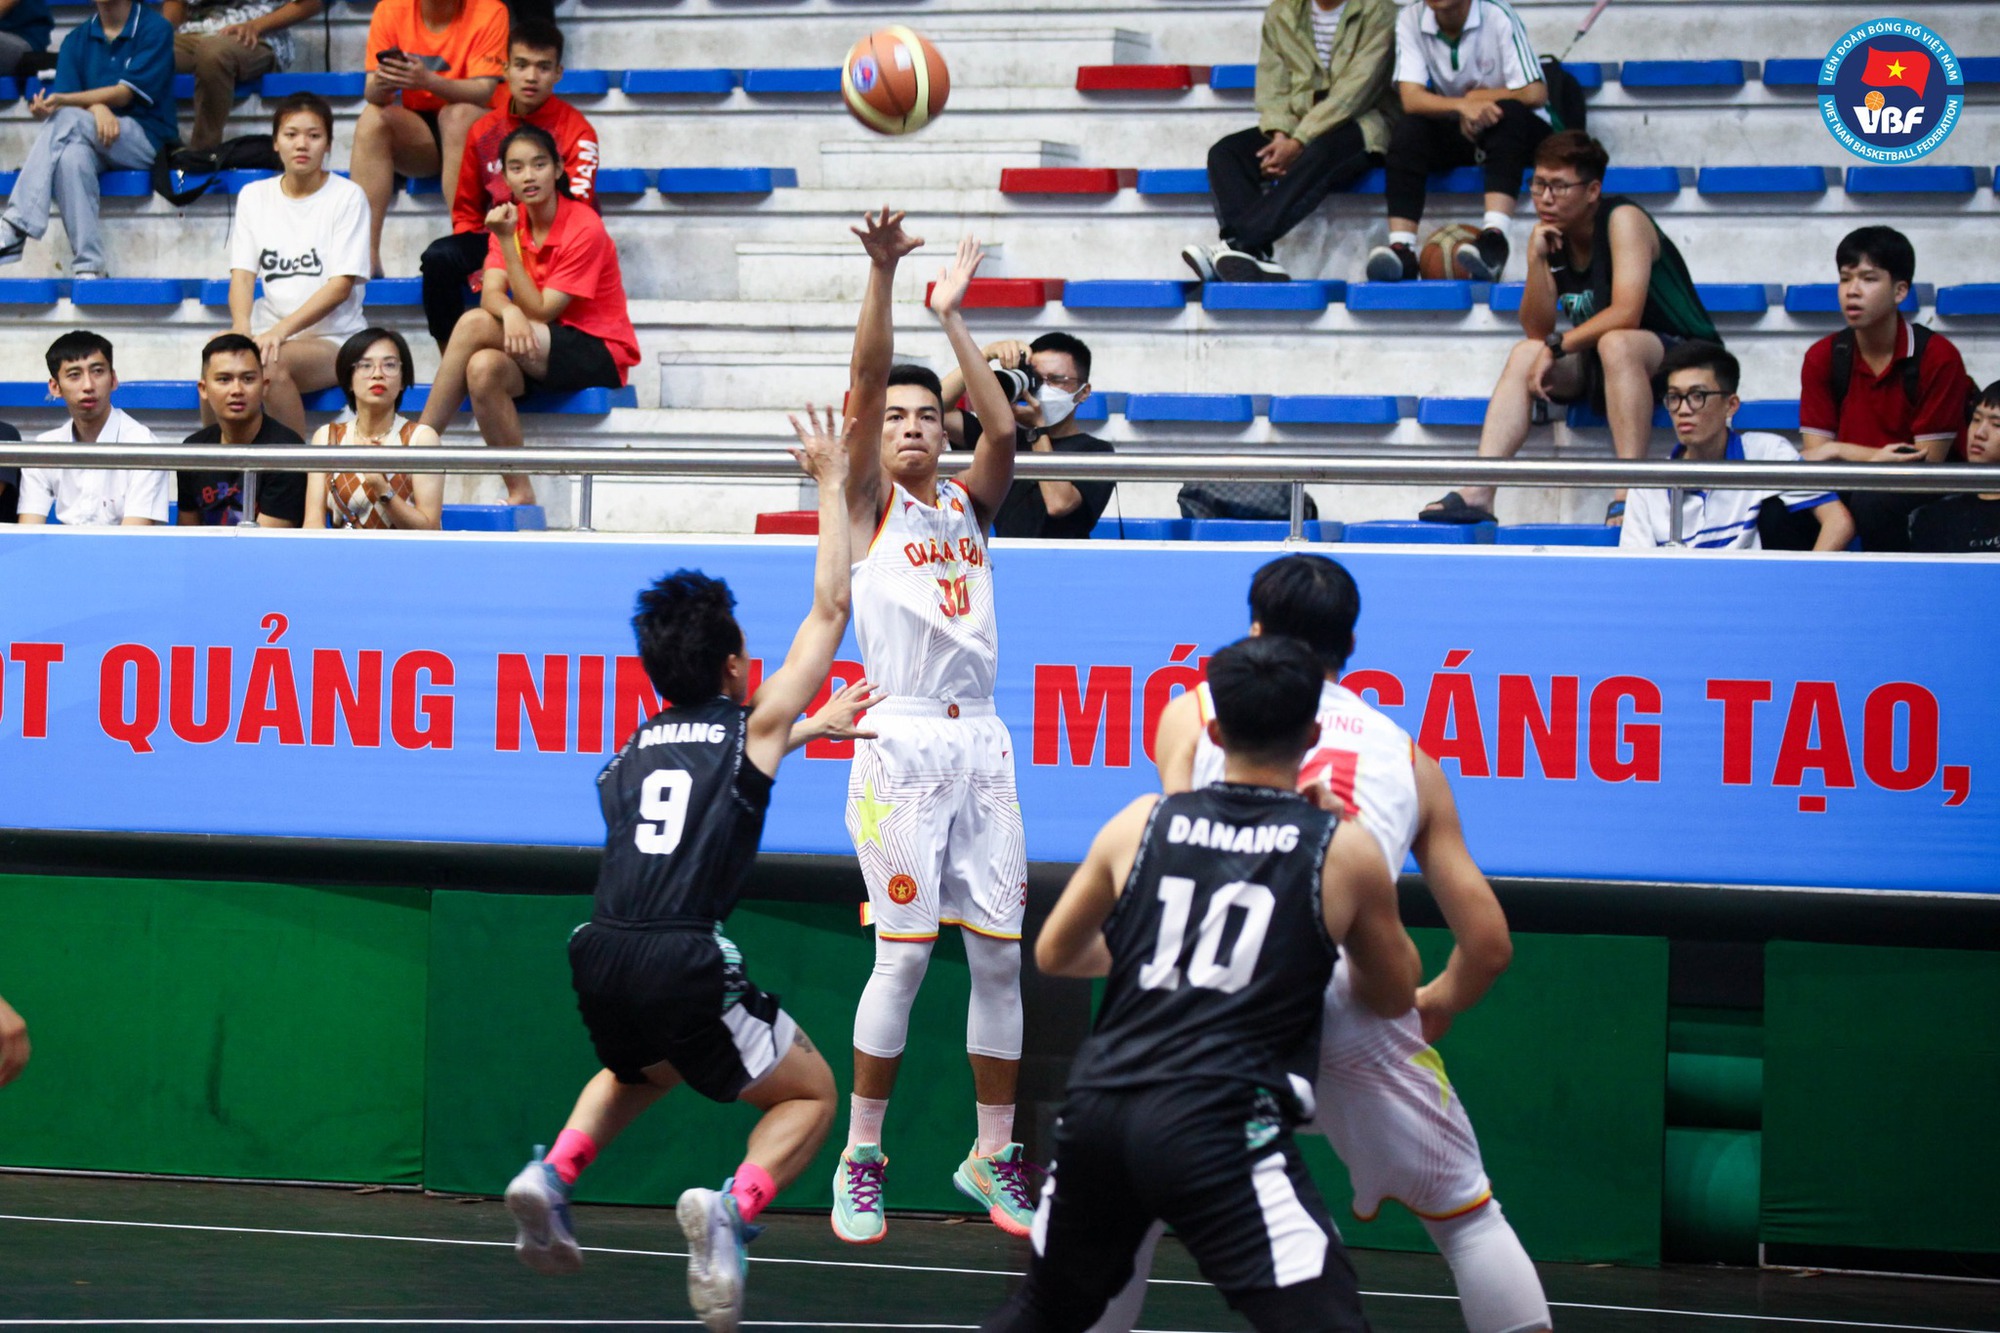 Tổng kết ngày 2 bóng rổ Đại hội Thể thao toàn quốc 2022: Sóc Trăng đánh bại TP. Hồ Chí Minh - Ảnh 3.